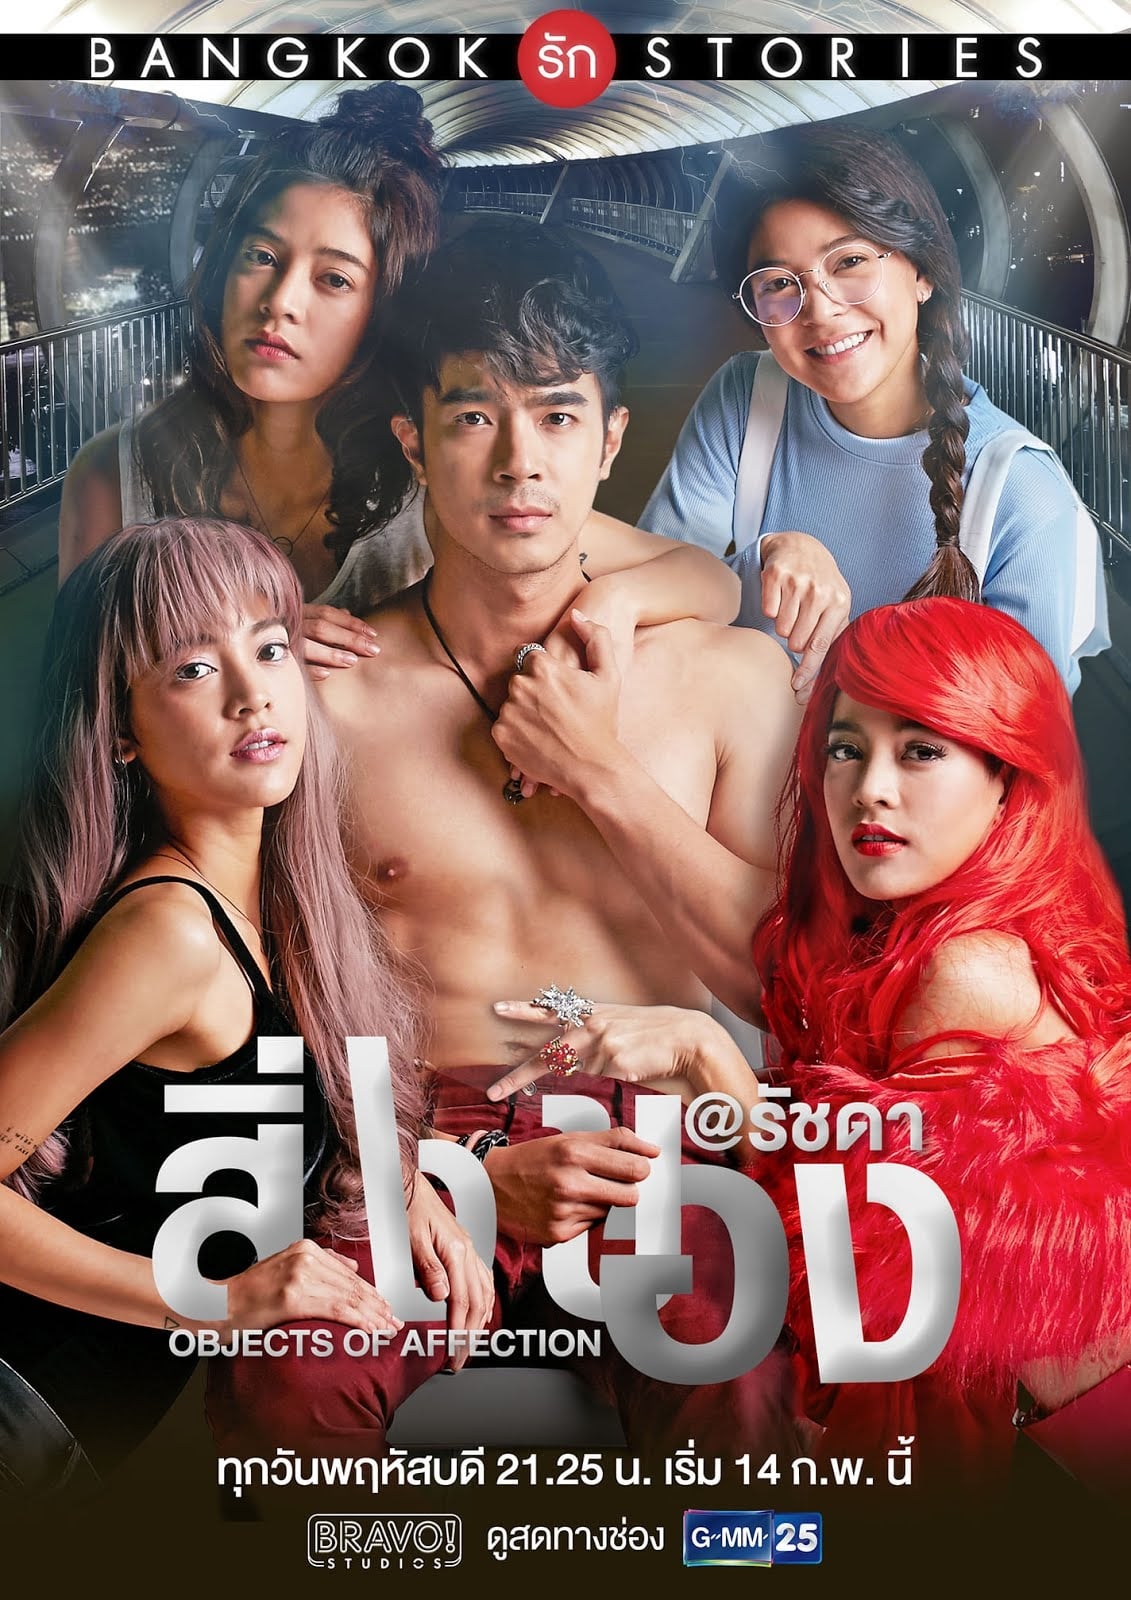 Les saisons de Bangkok Love Stories: Objects of Affection sont-elles disponibles sur Netflix ou autre ?